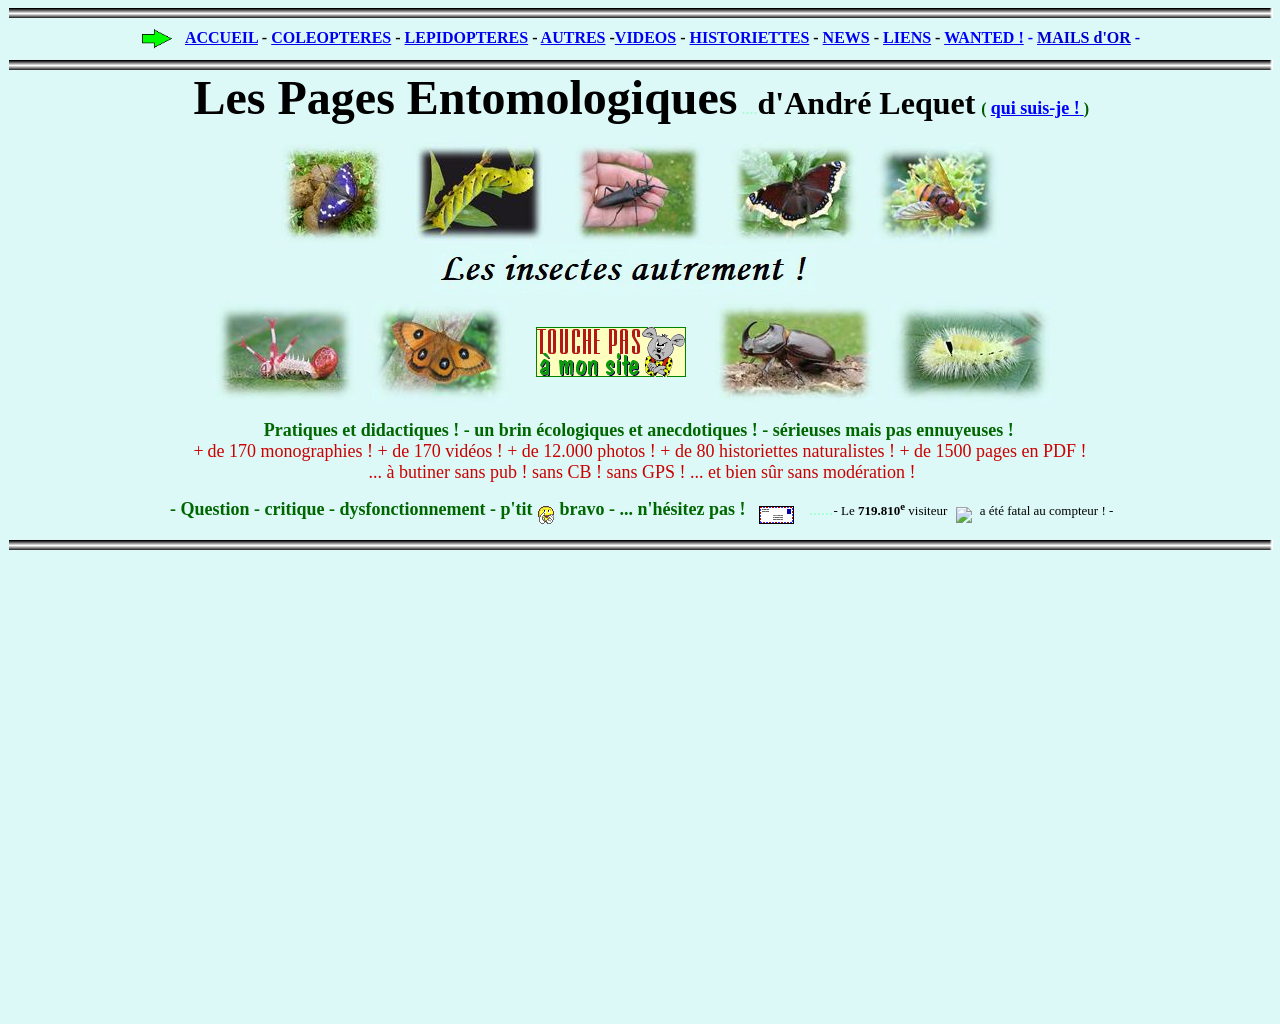 www.insectes-net.fr